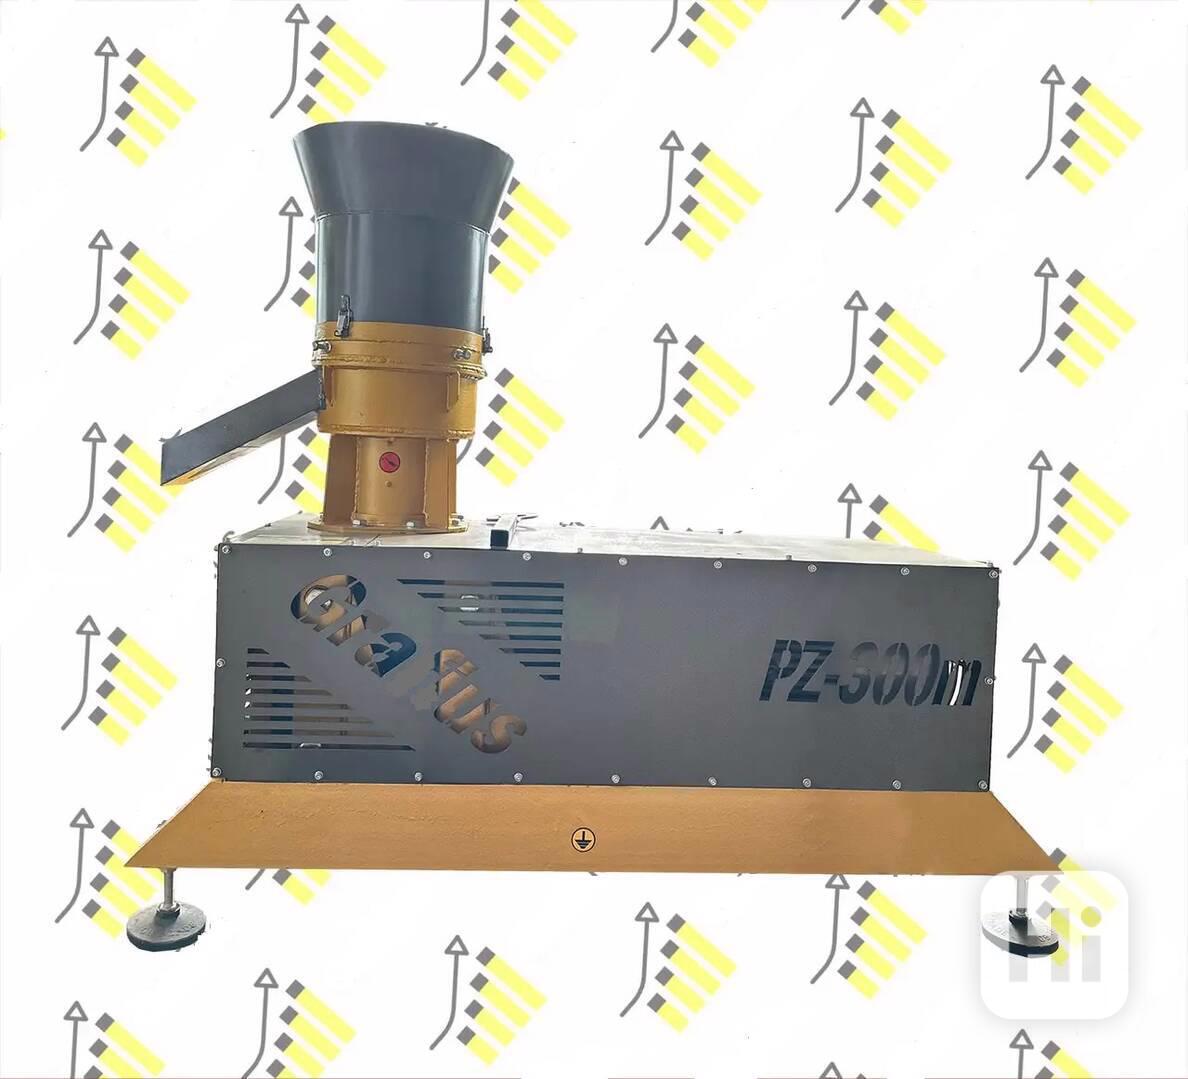 Motorový granulátor na pelety a krmiva PZ-350(M)  - foto 1